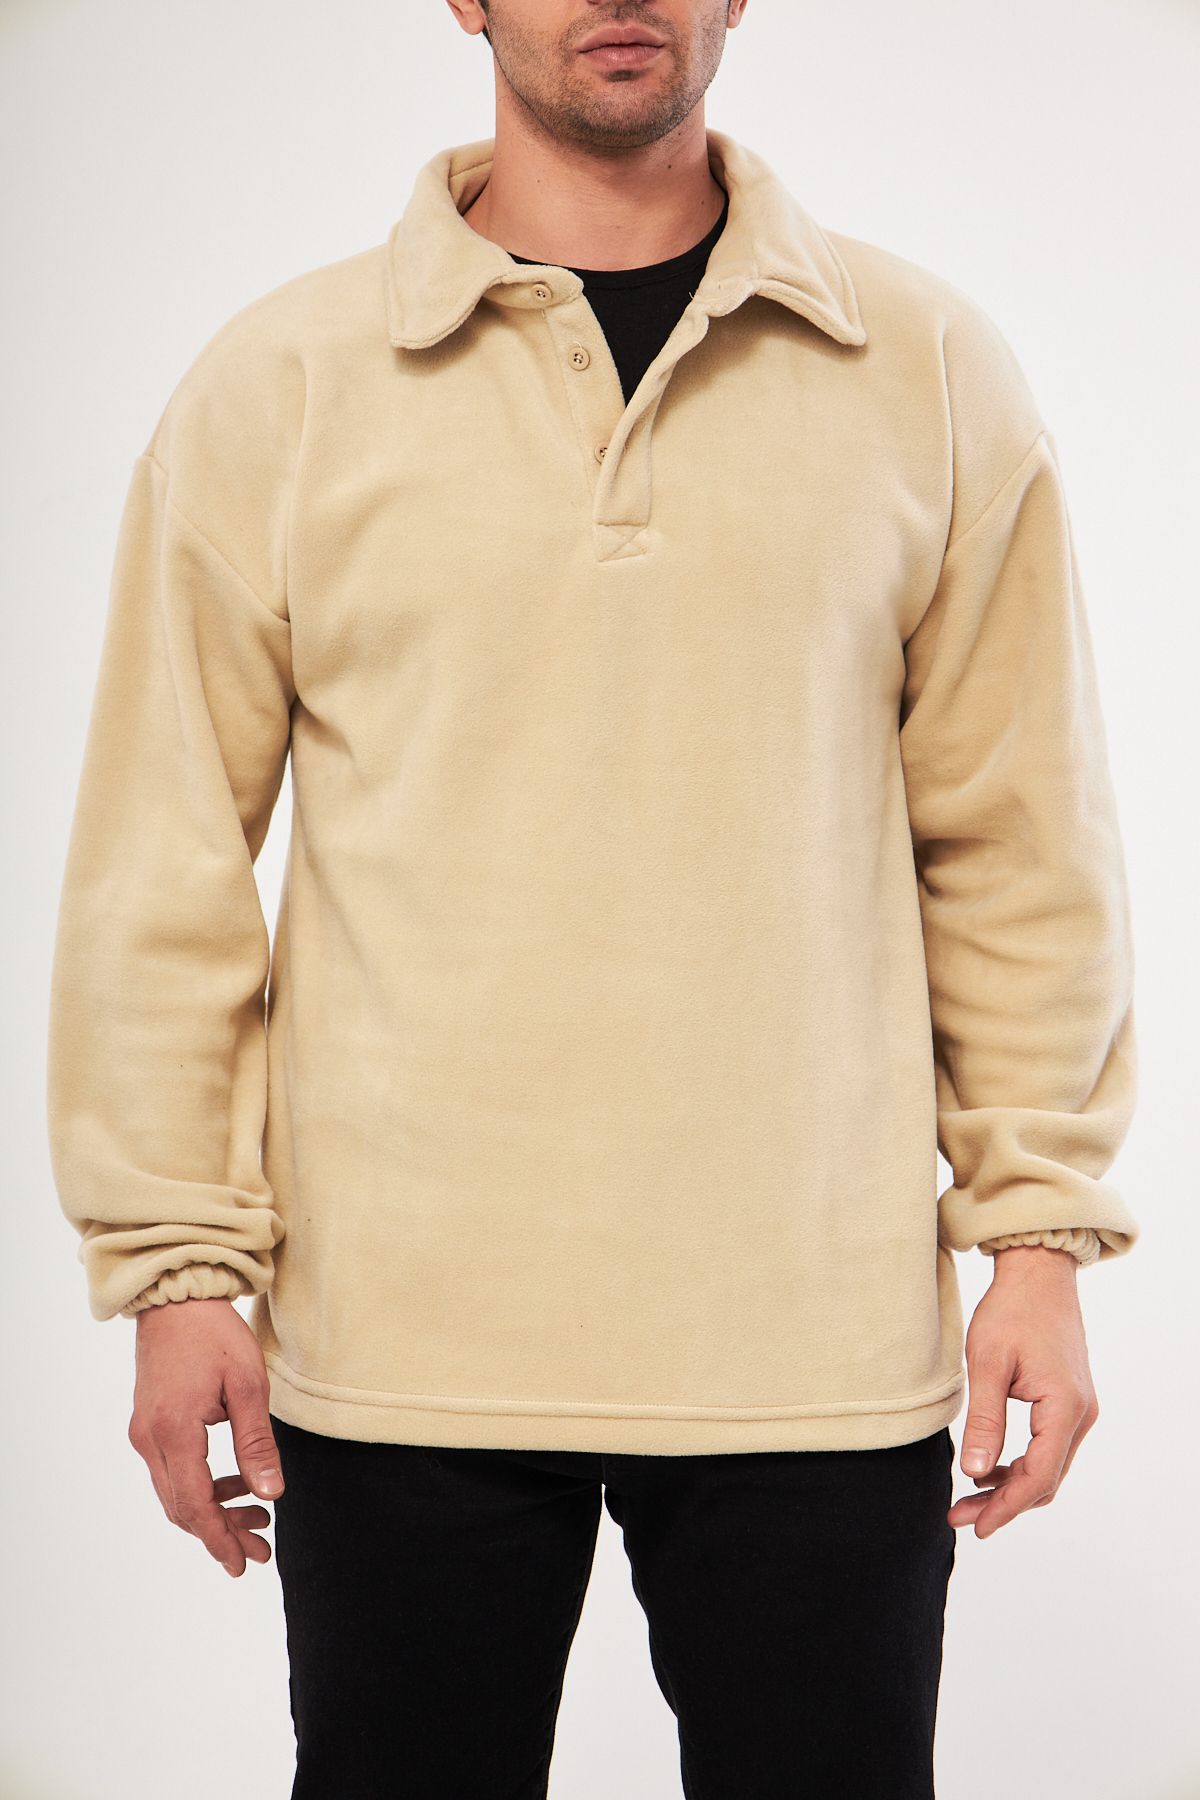 Ghassy Co Ghassy Co. Erkek Oversize Ayarlanabilir Bel Lastikli Gömlek Yaka Polar Sweatshirt